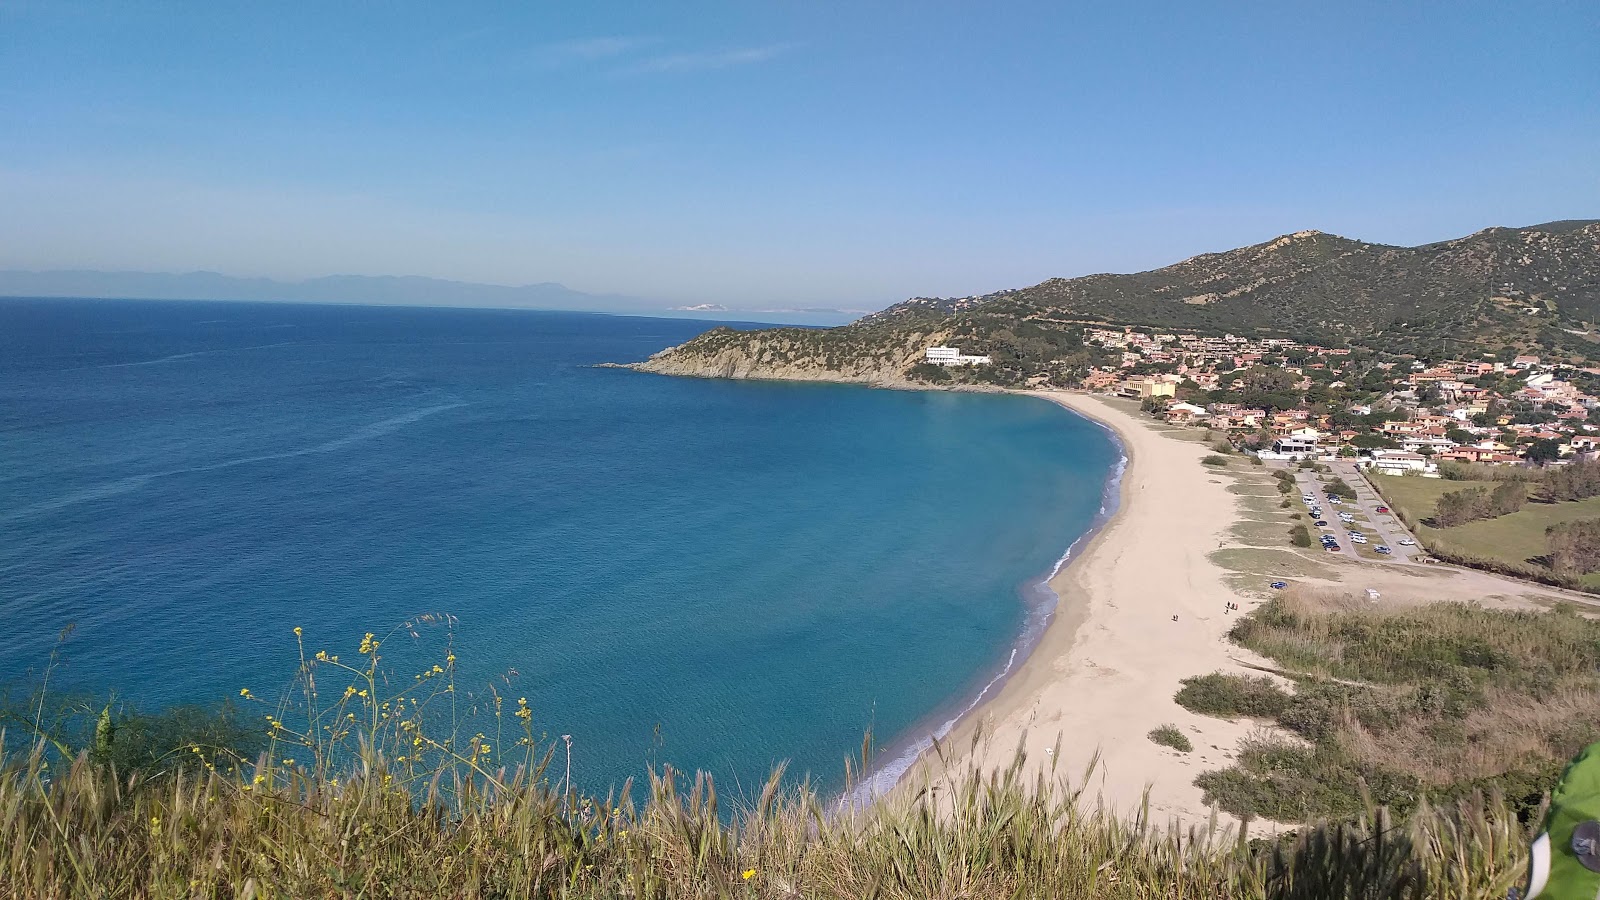 Fotografie cu Plaja Solanas - locul popular printre cunoscătorii de relaxare